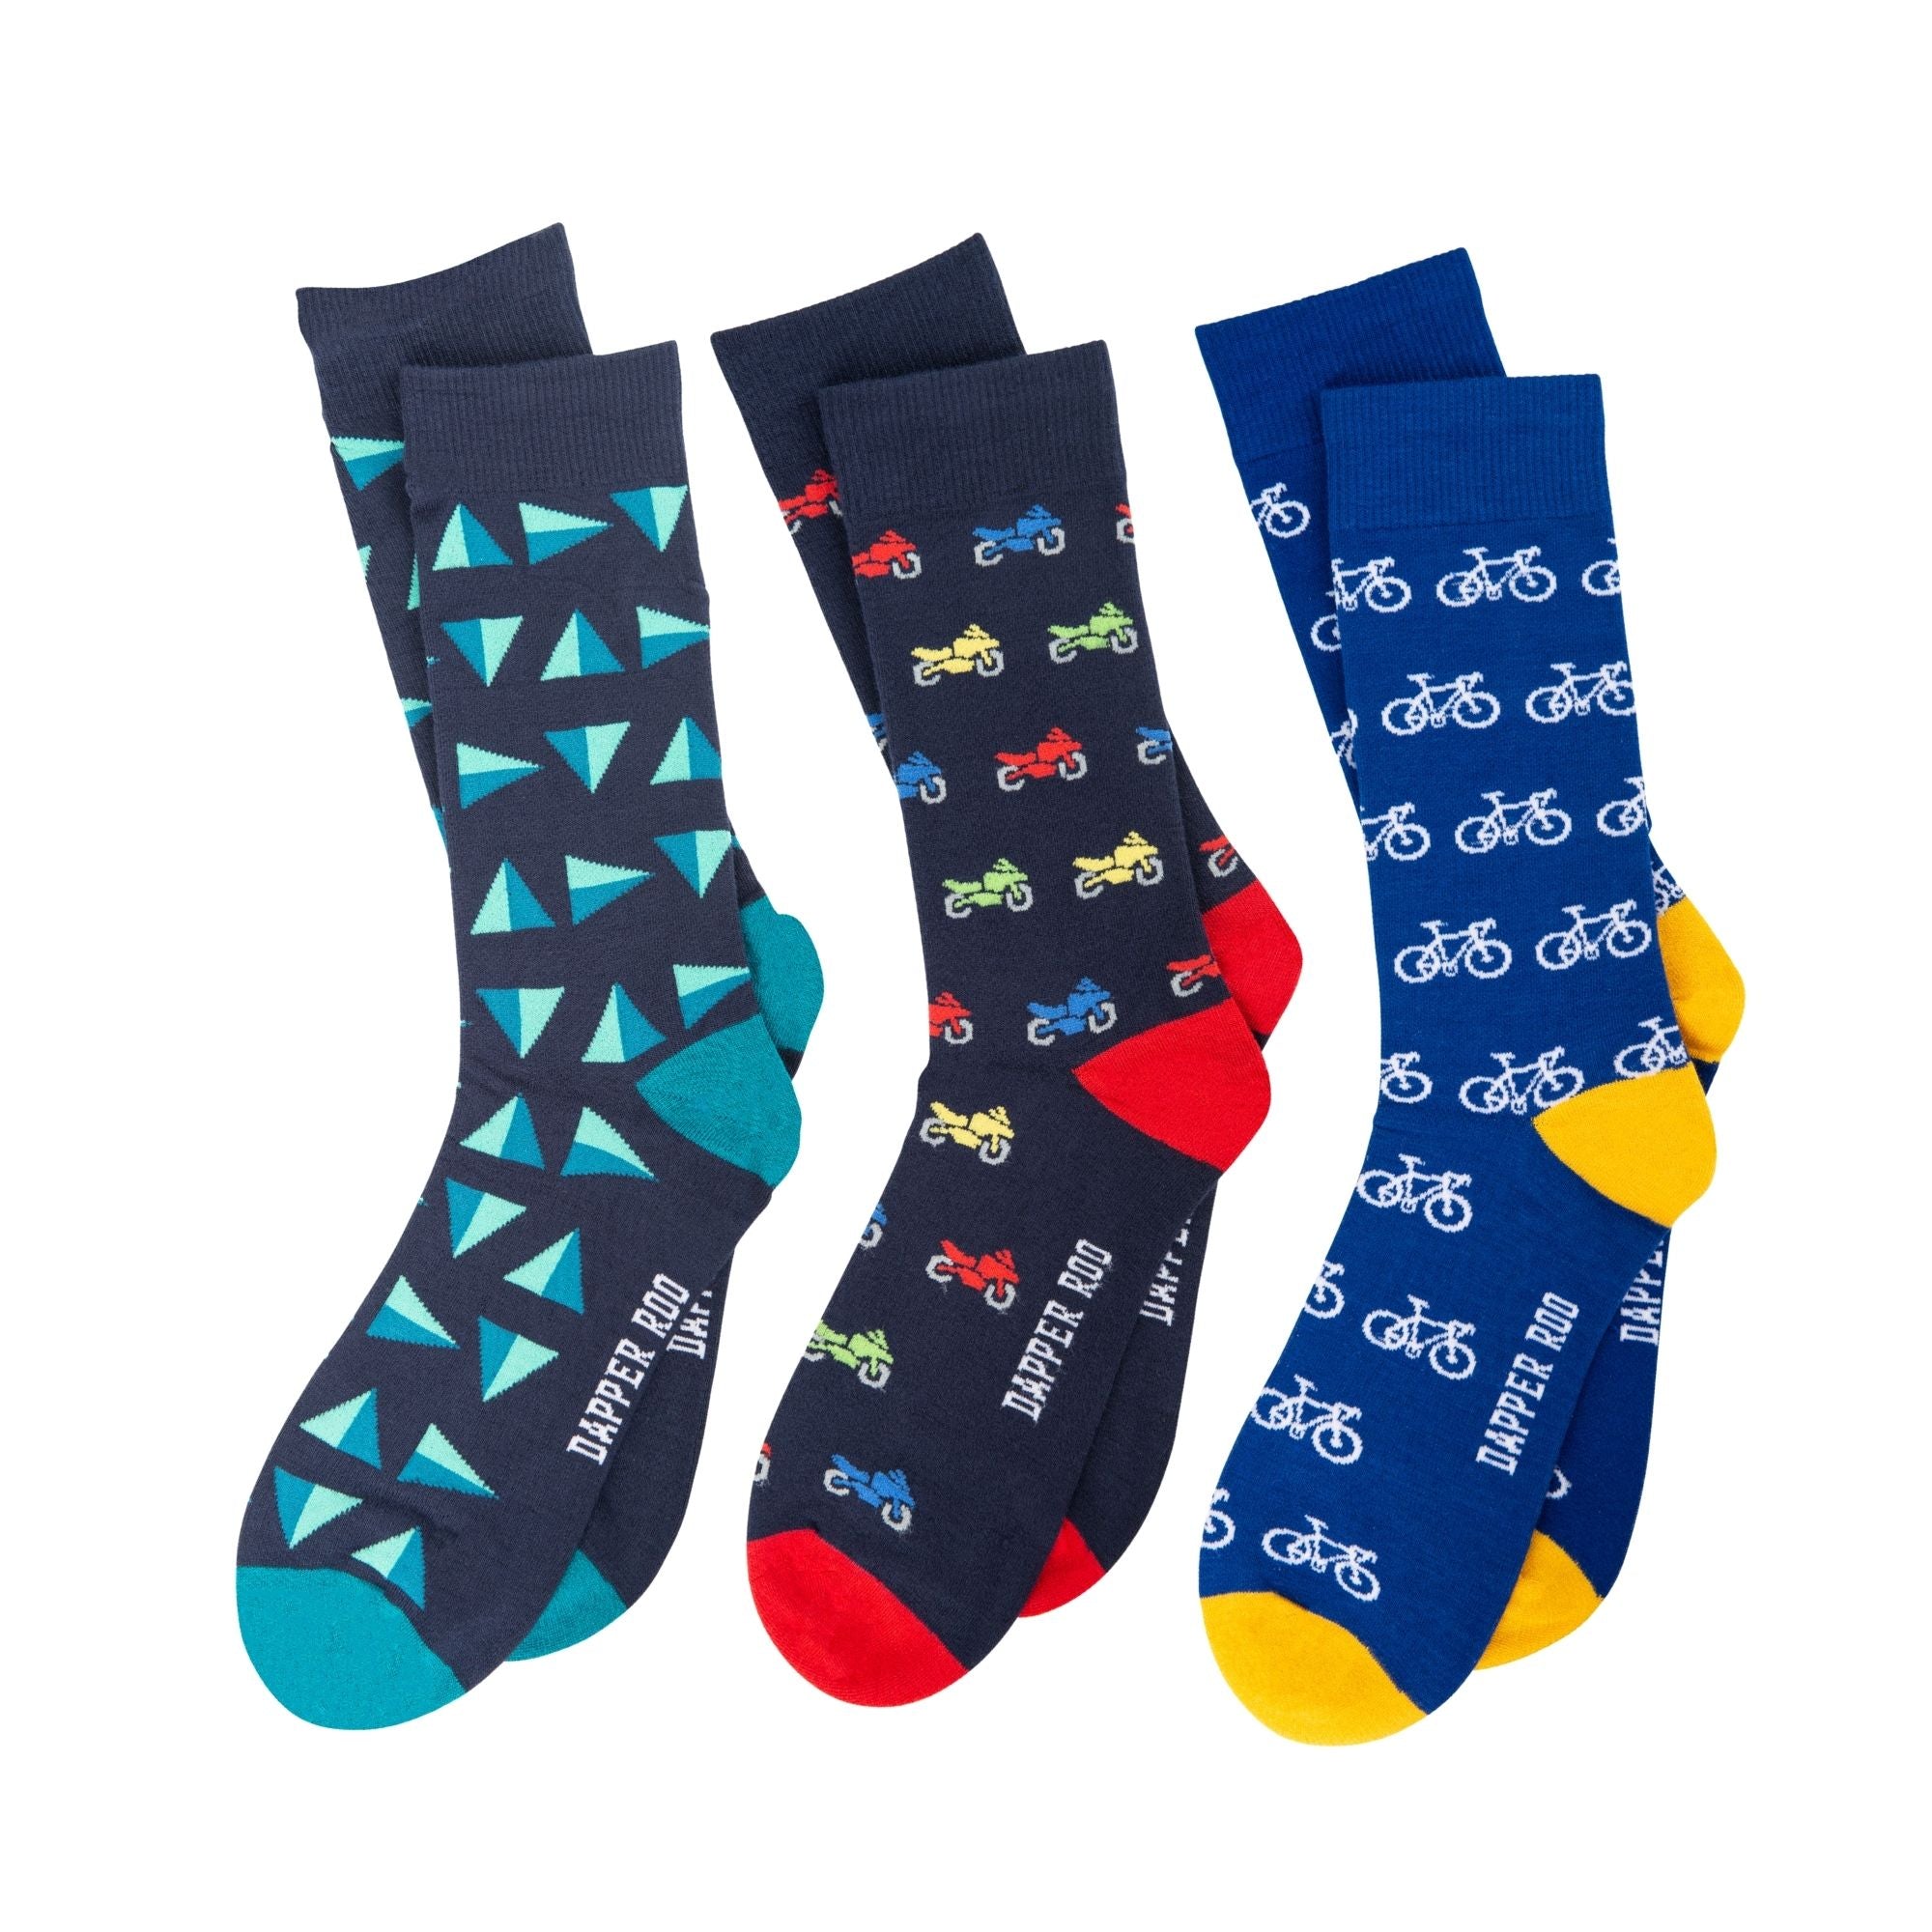 Ride on Socks Gift Set, Socks Gift, Gift Sets, Socks, Location: SK2028+SK2004+SK2048, SS5010, Clinks.com